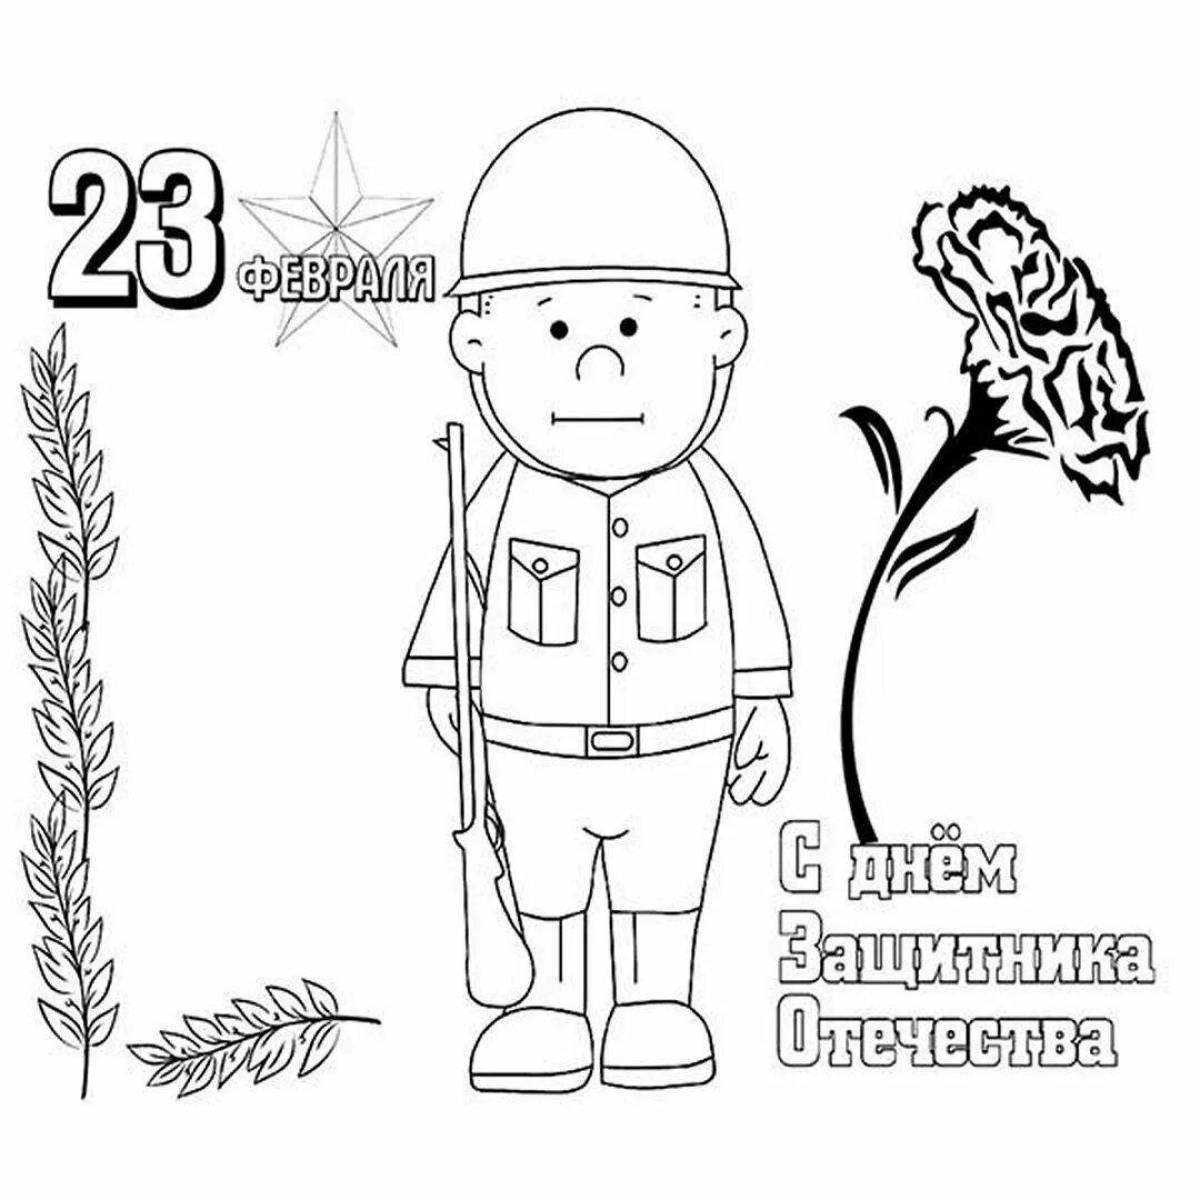 Праздничная открытка с днем защитника отечества 23 февраля